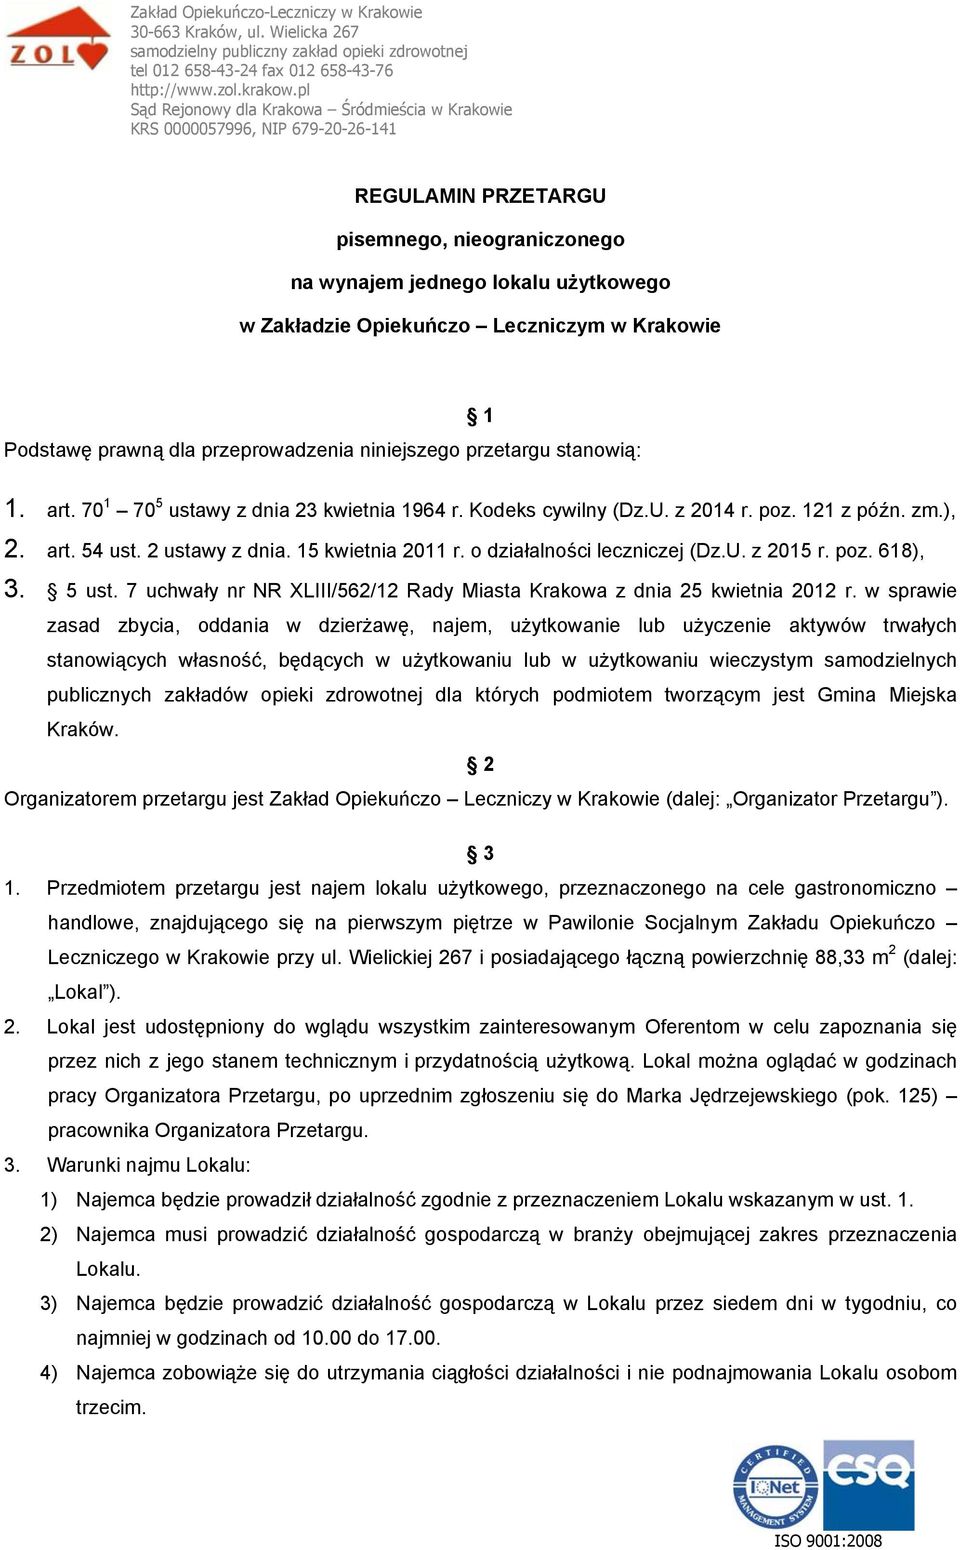 poz. 618), 3. 5 ust. 7 uchwały nr NR XLIII/562/12 Rady Miasta Krakowa z dnia 25 kwietnia 2012 r.